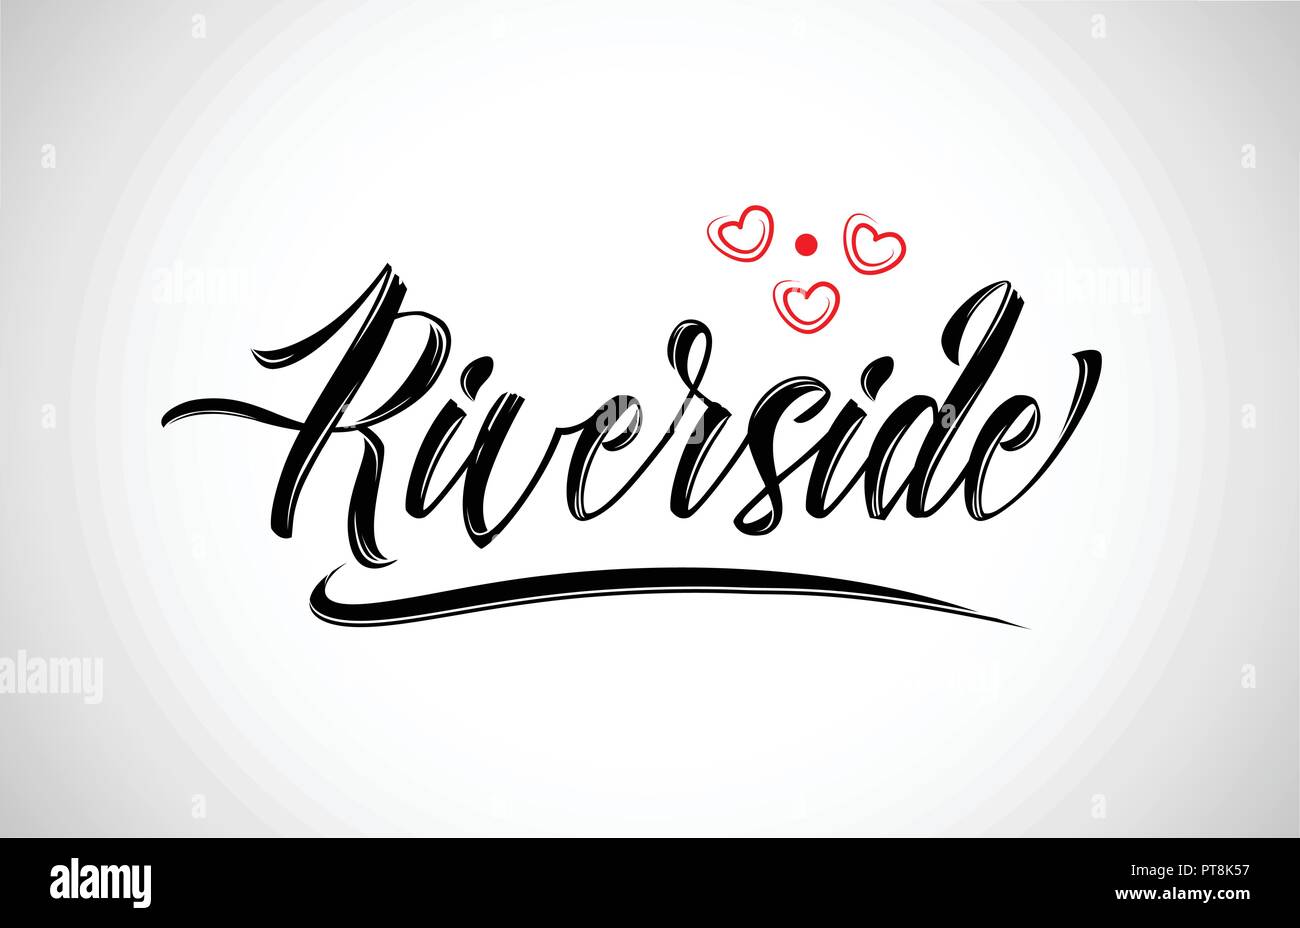 Riverside city texte conception avec coeur rouge design icône typographique approprié pour la promotion touristique Illustration de Vecteur